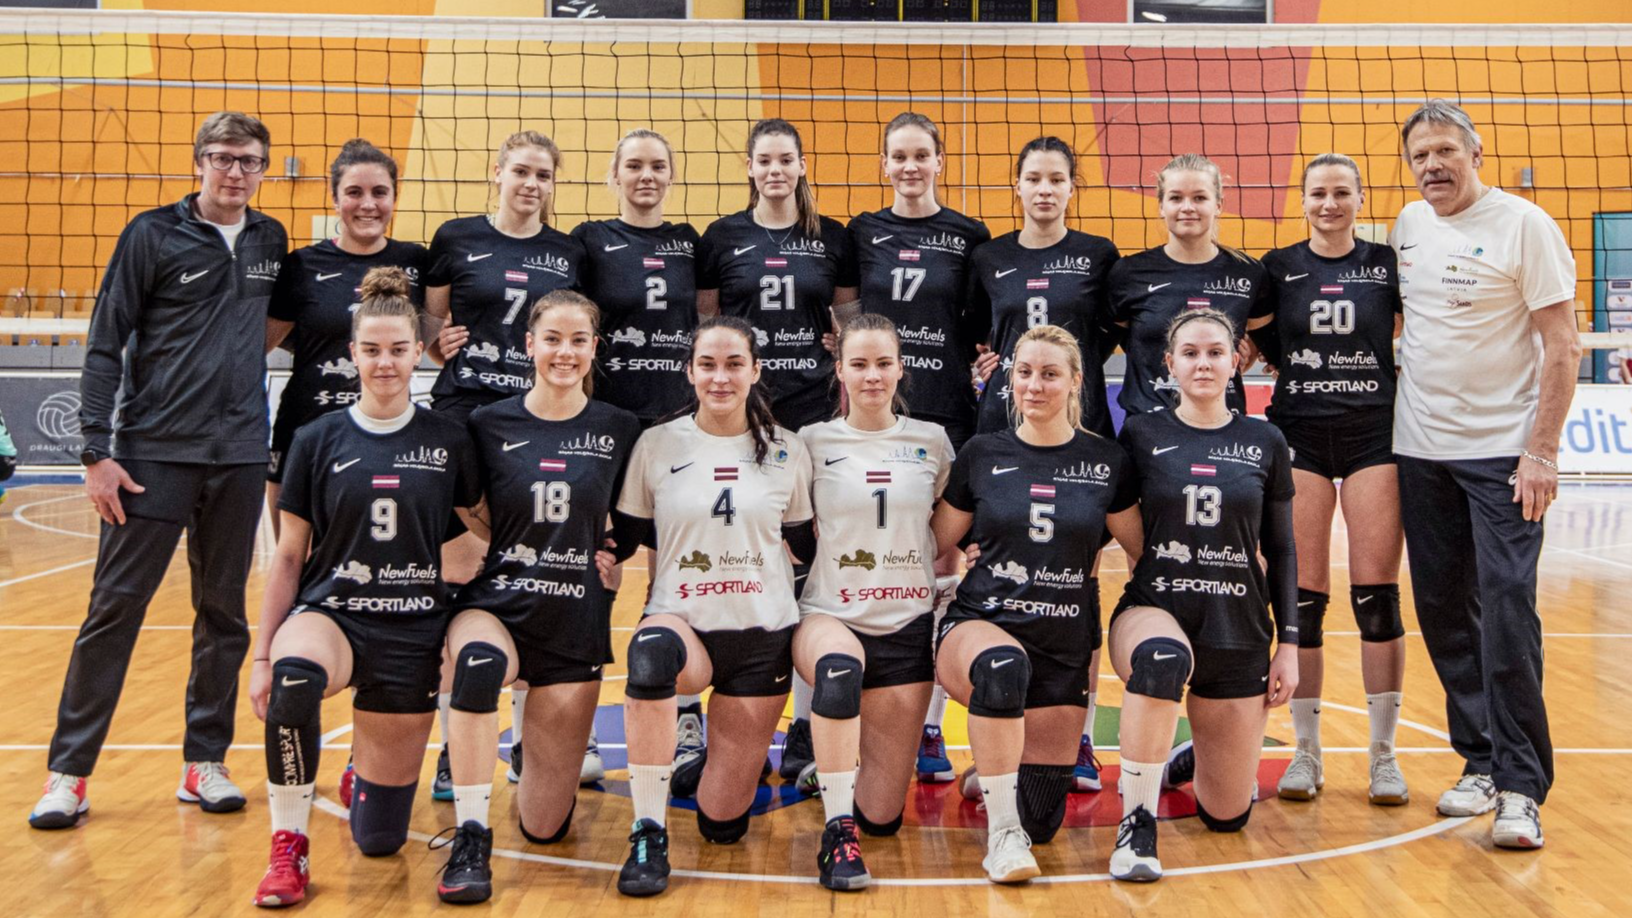 RVS/LU komanda Tartu cīnīsies par Baltijas līgas čempionu titulu